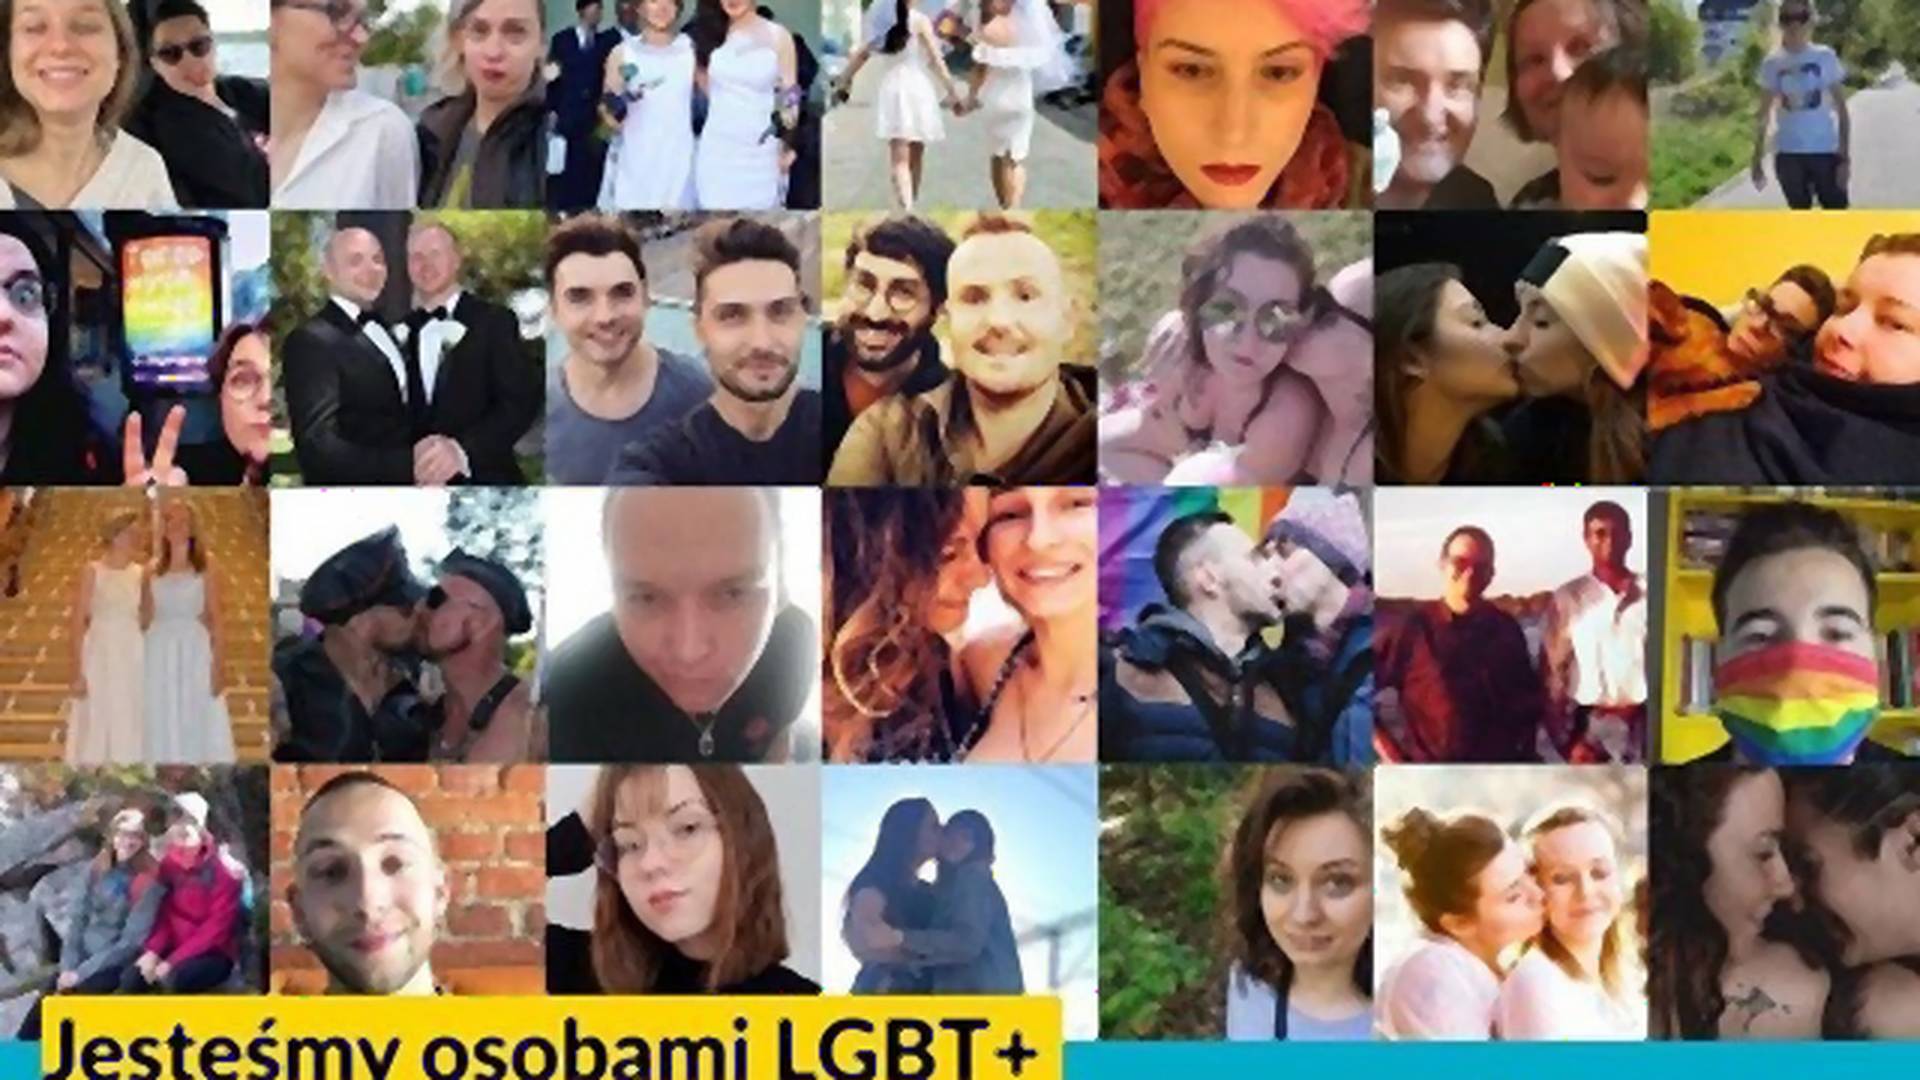 Urszula Hołownia nie zna osób LGBT, które chciałyby wziąć ślub. Ale one chętnie poznają ją - akcja #poznajmysię